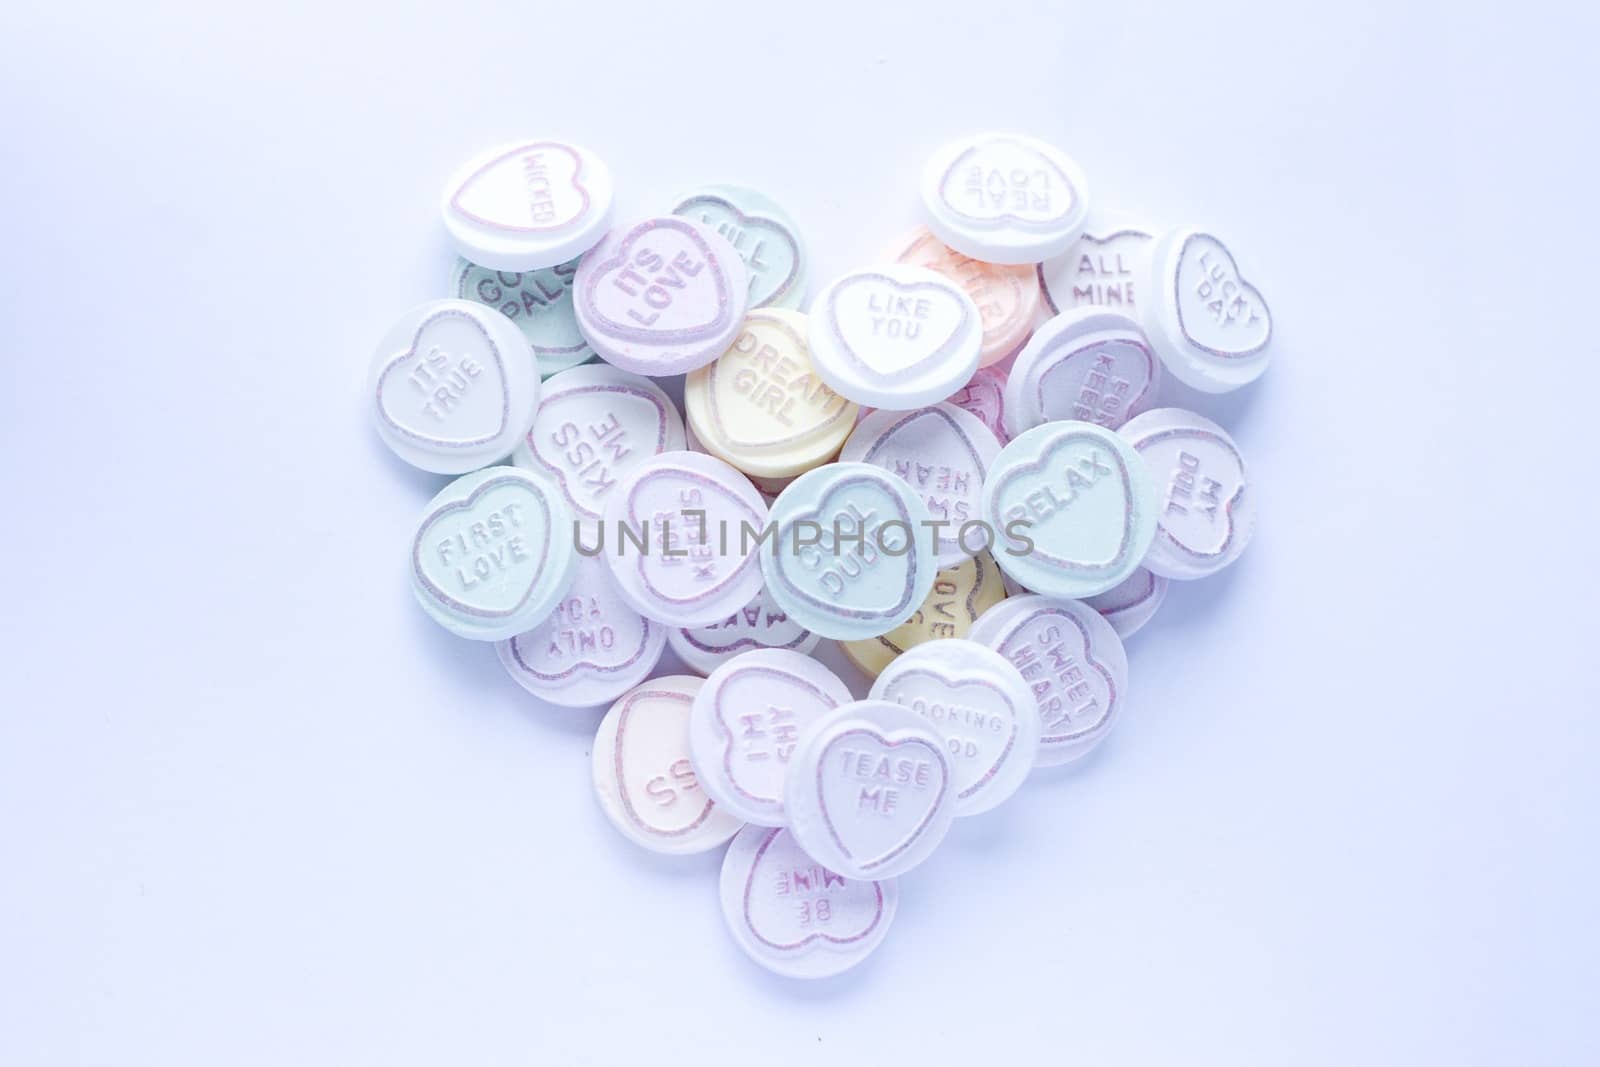 Sweetheart sweets in a heart shape by MC2000